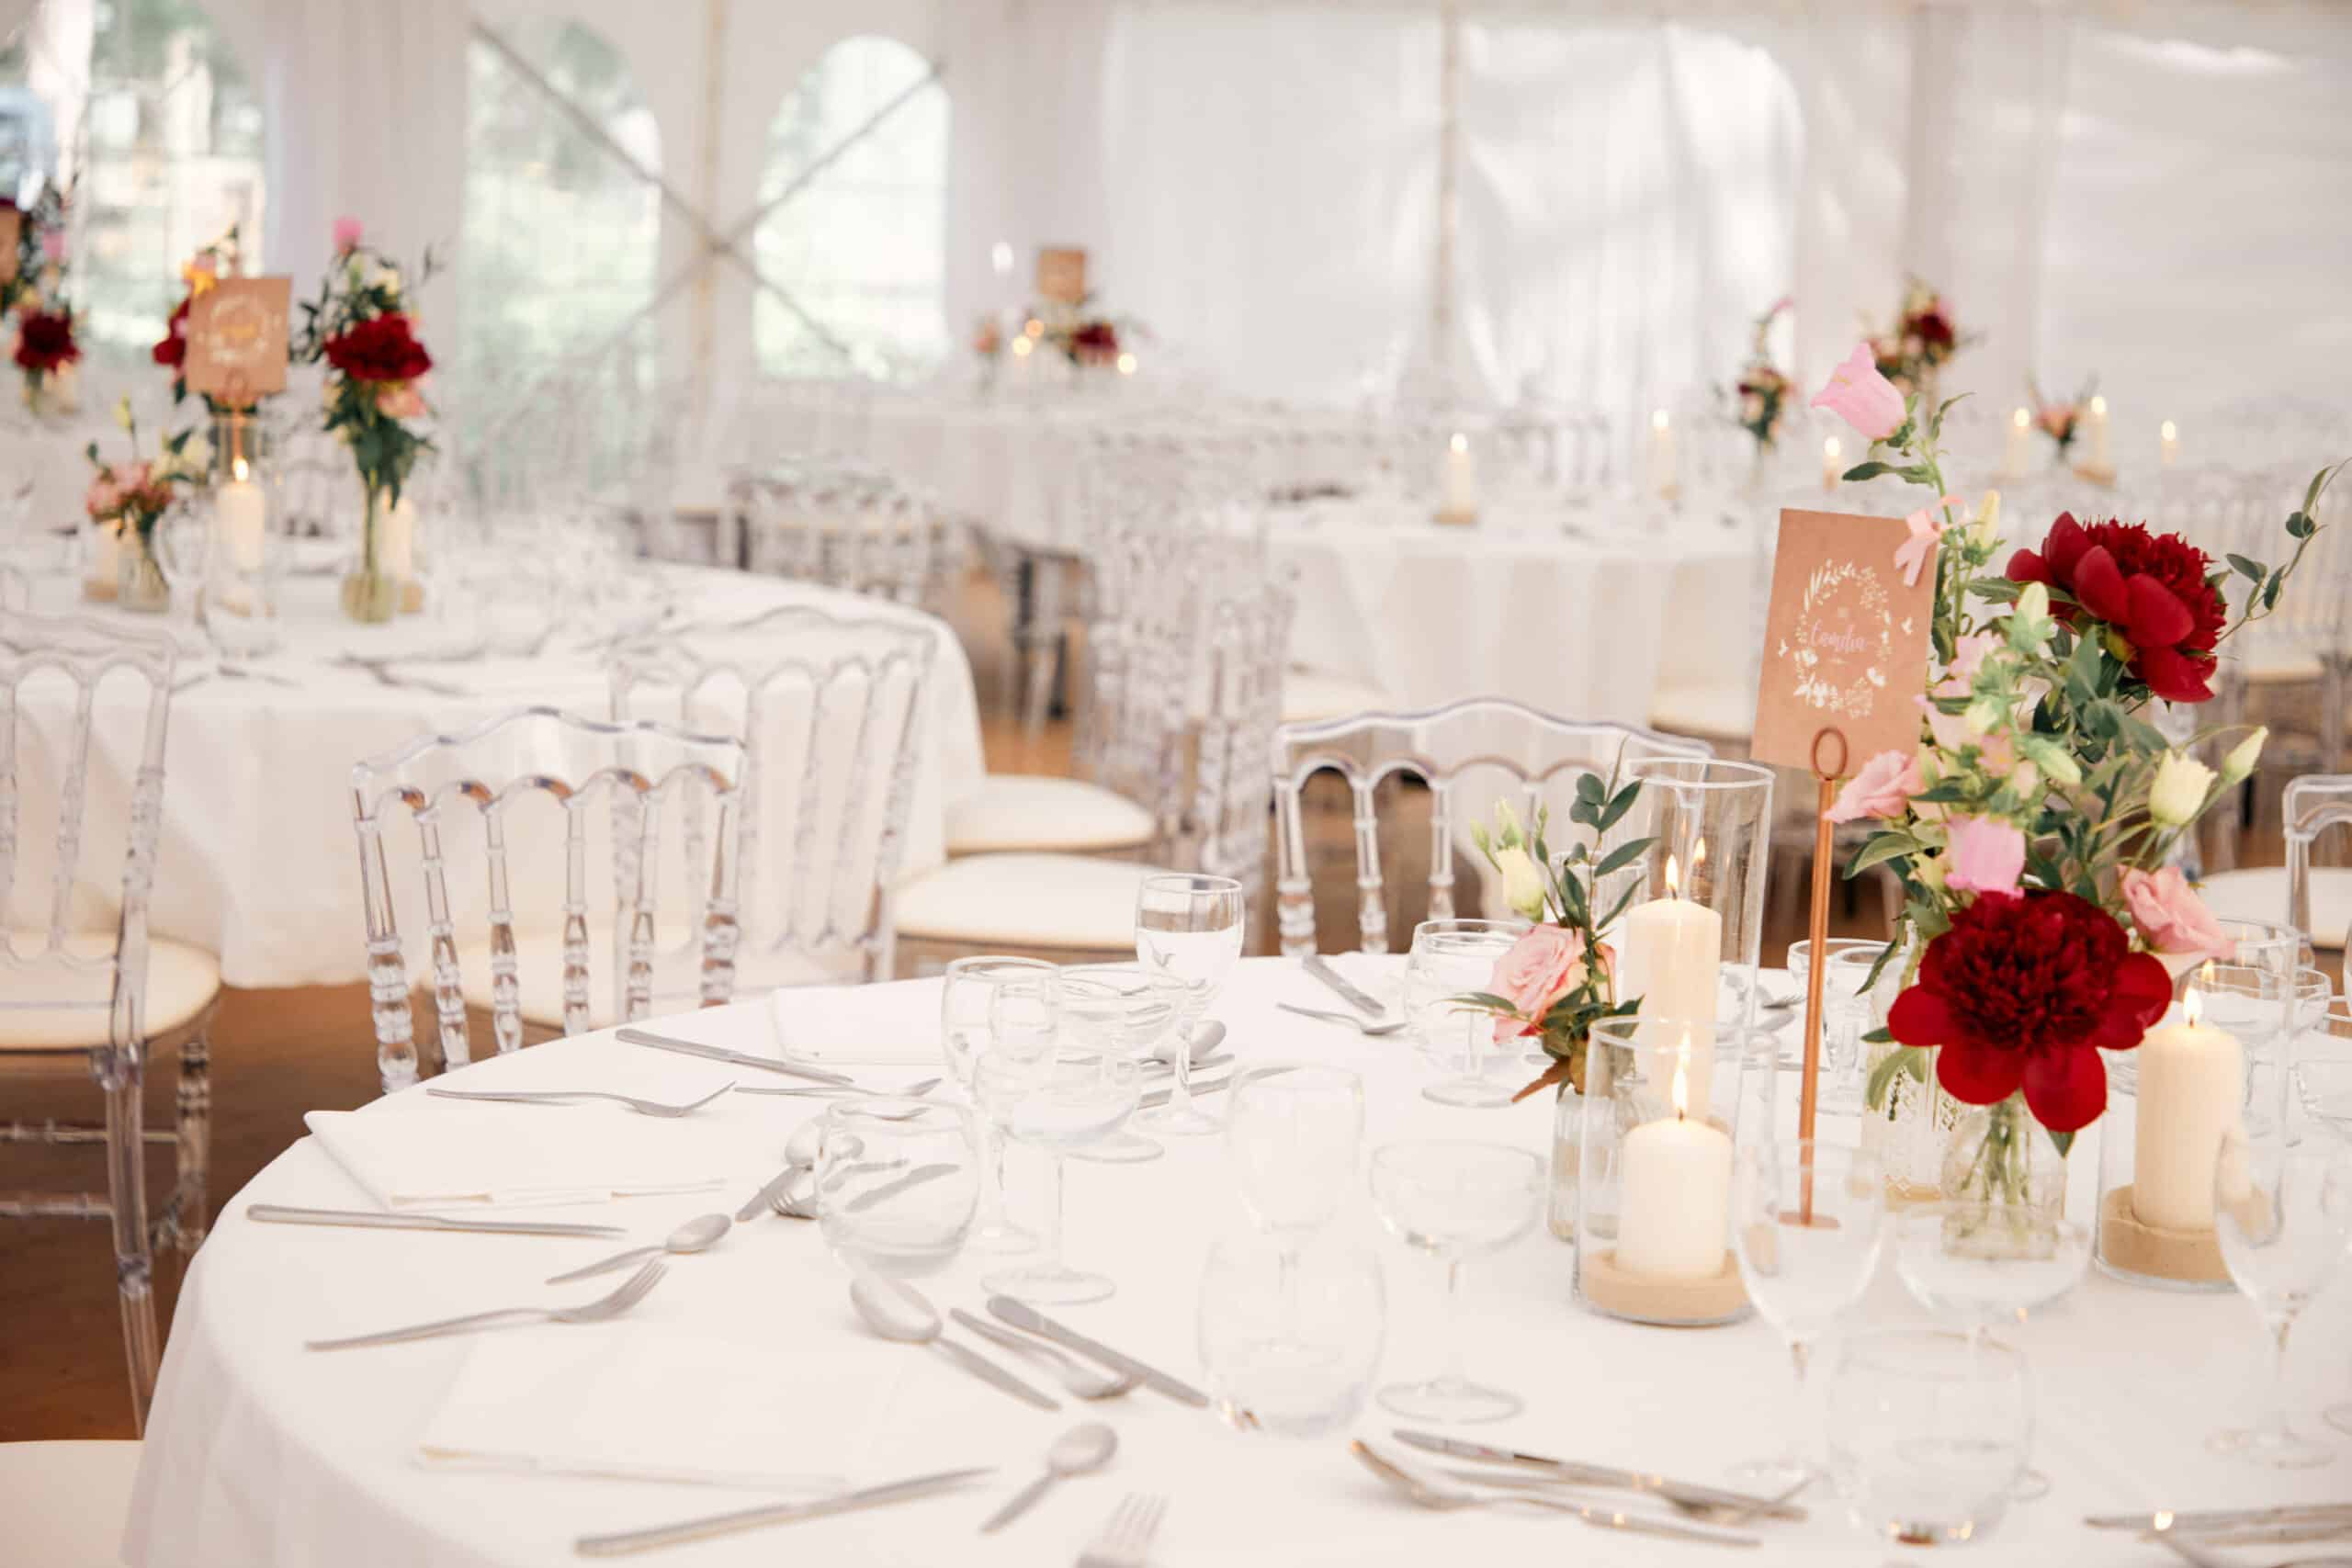 Tables nappée en blancs comportant de la vaisselle, des bougies et des bouquets de fleurs dressées pour un mariage